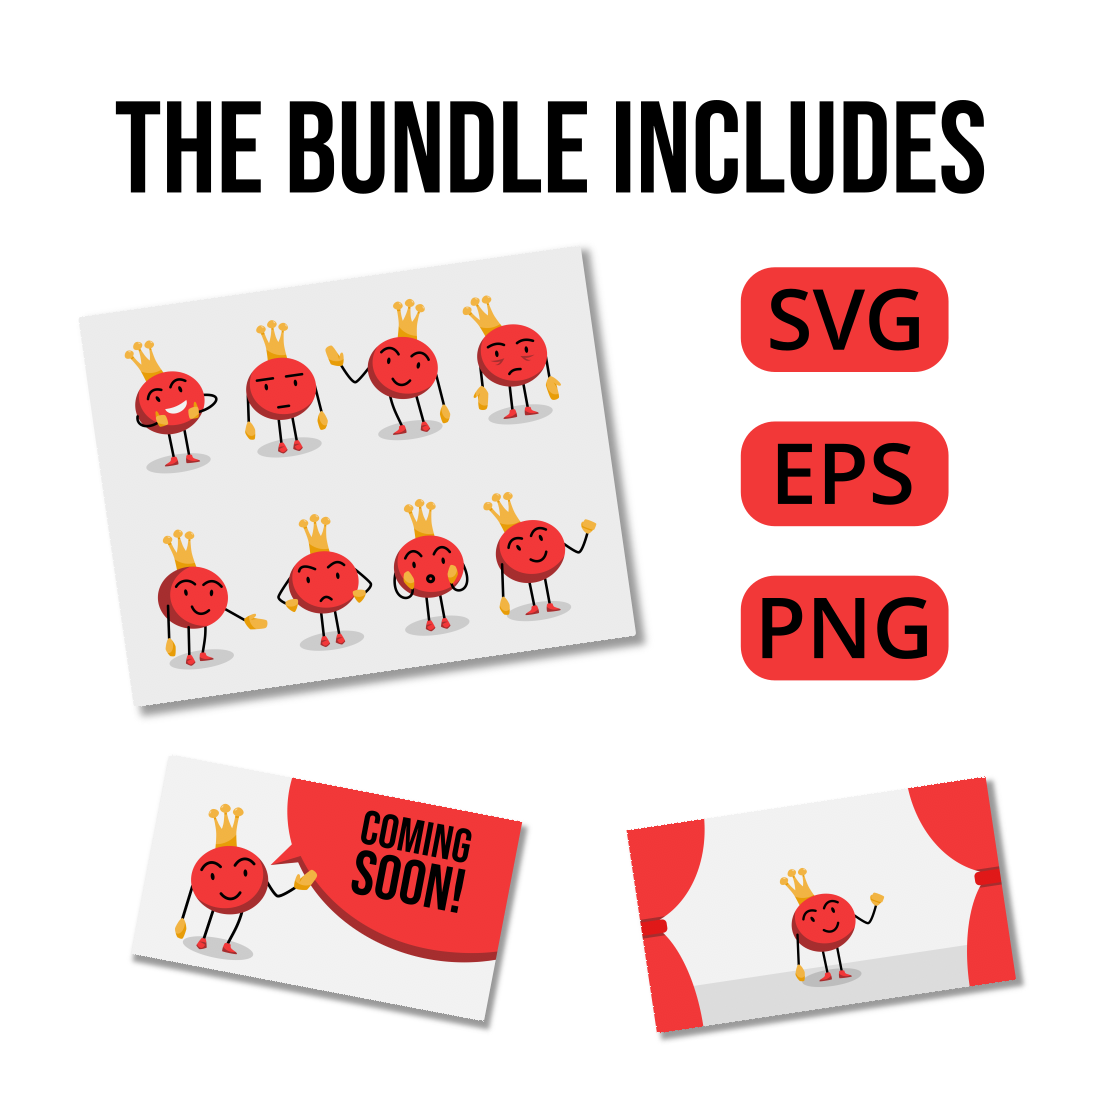 King Mascot Emoji Vector Illustrations Design Bundle cover image.